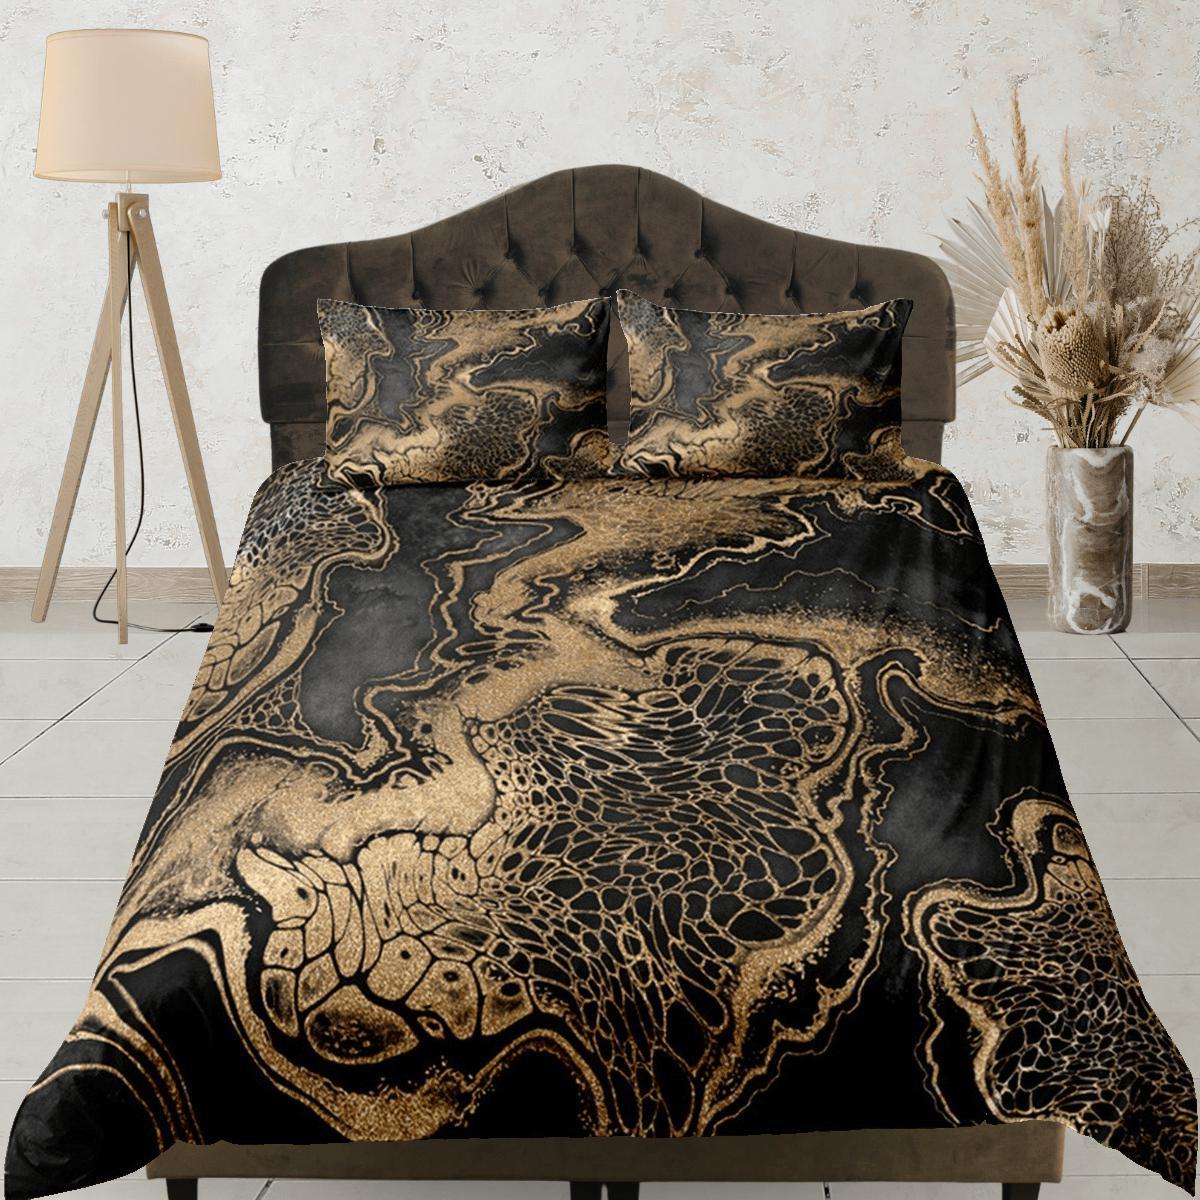 daintyduvet Gold Marble Swirl Black Duvet Cover Set Colorful Bedspread, Dorm Bedding & Pillowcase, King Duvet Cover Full, Comforter Queen